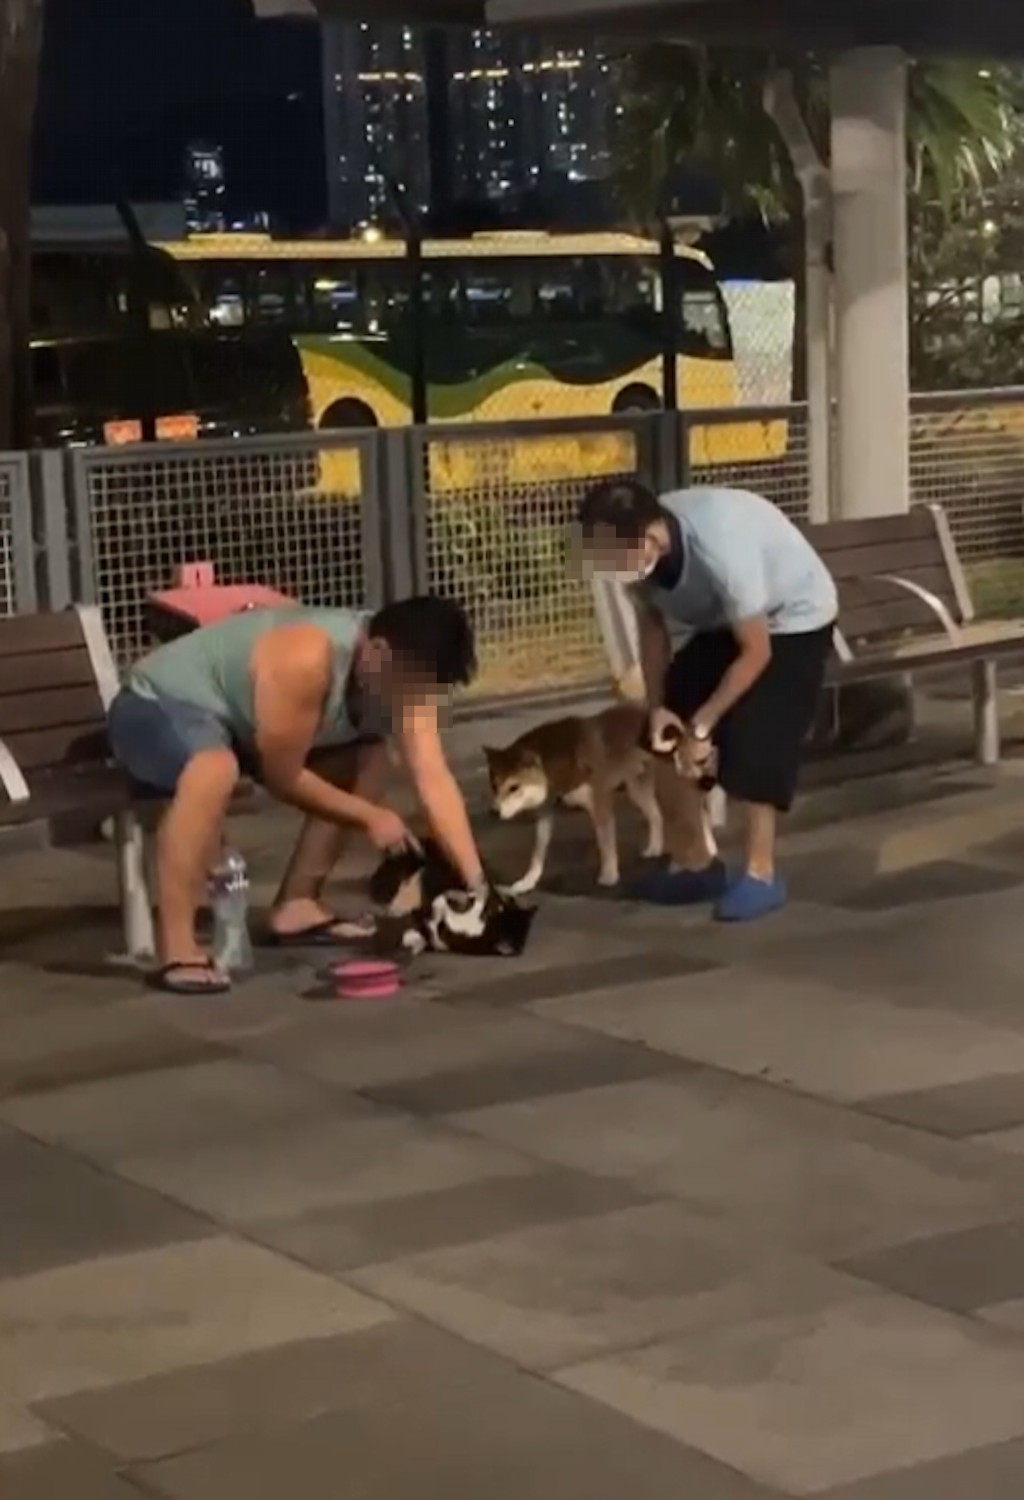 一名背心男子日前在宋王台游乐场的宠物公园粗暴「管教」柴犬。网上片段截图